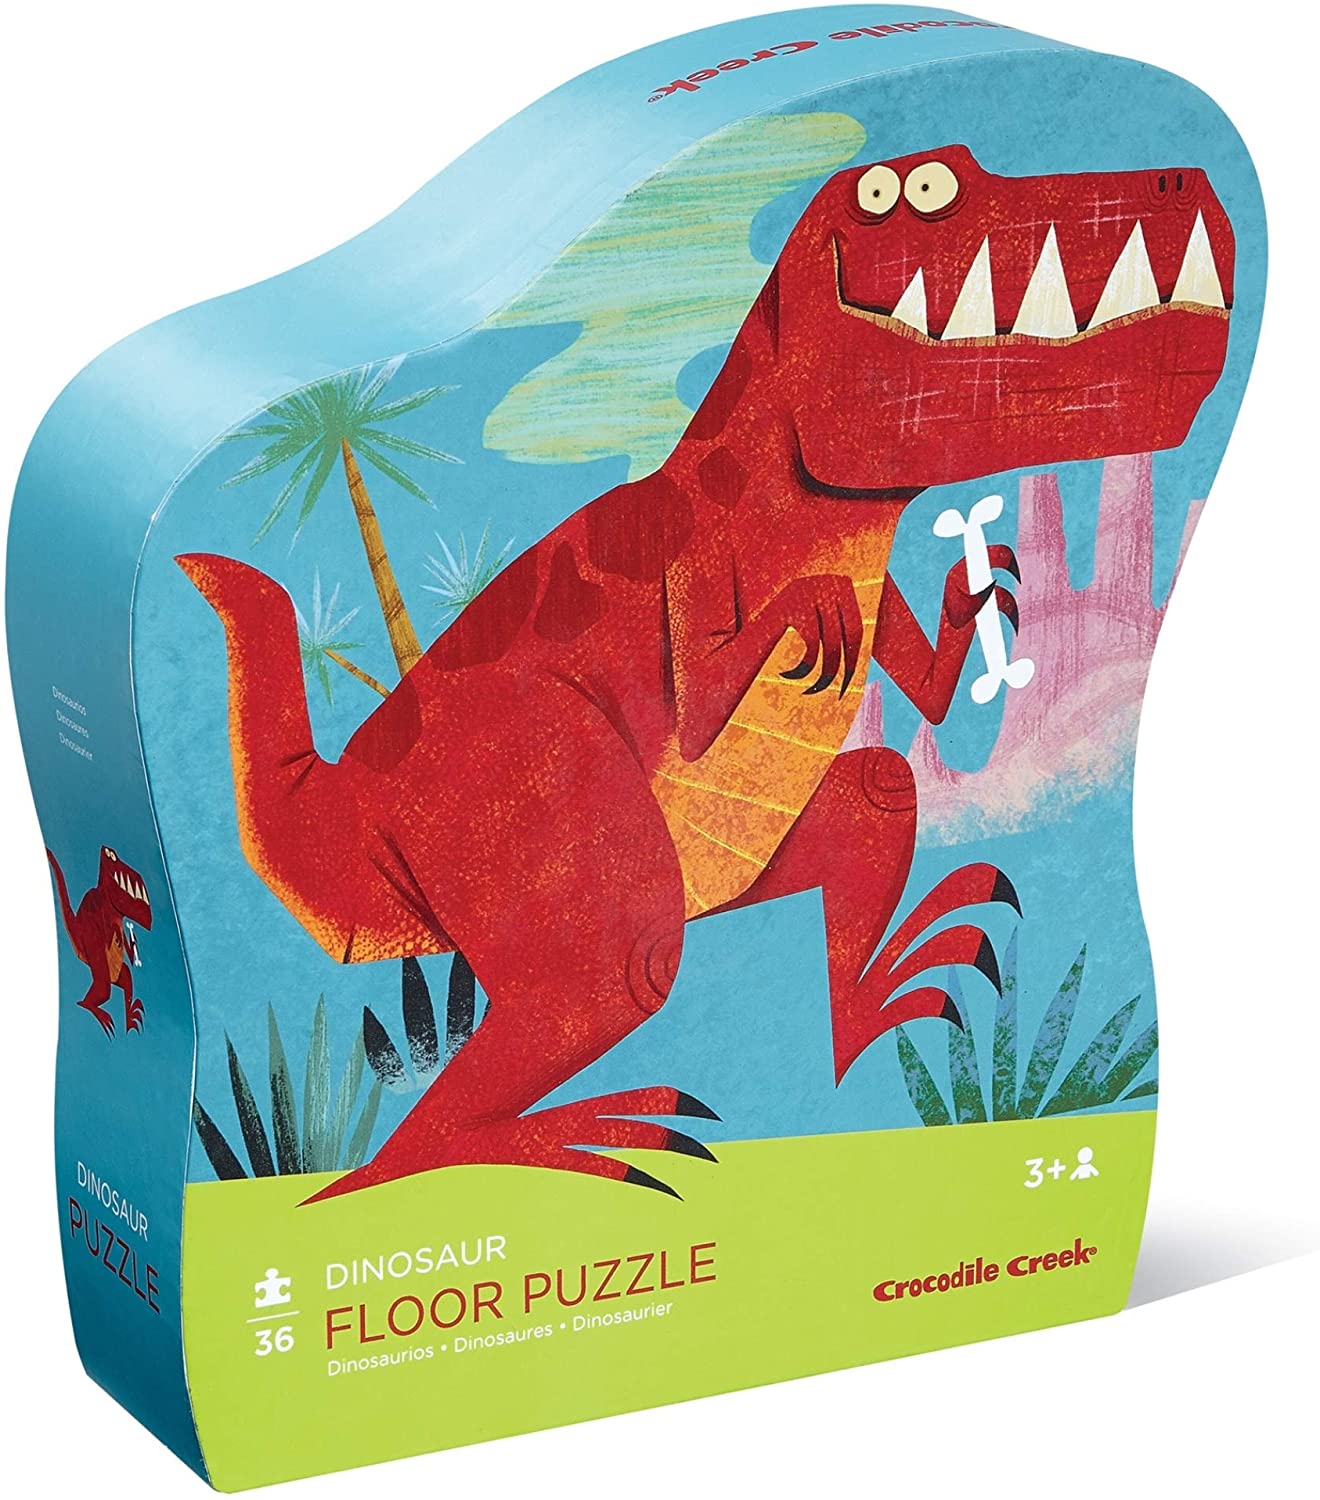 36pc Dinosaur Floor Puzzle